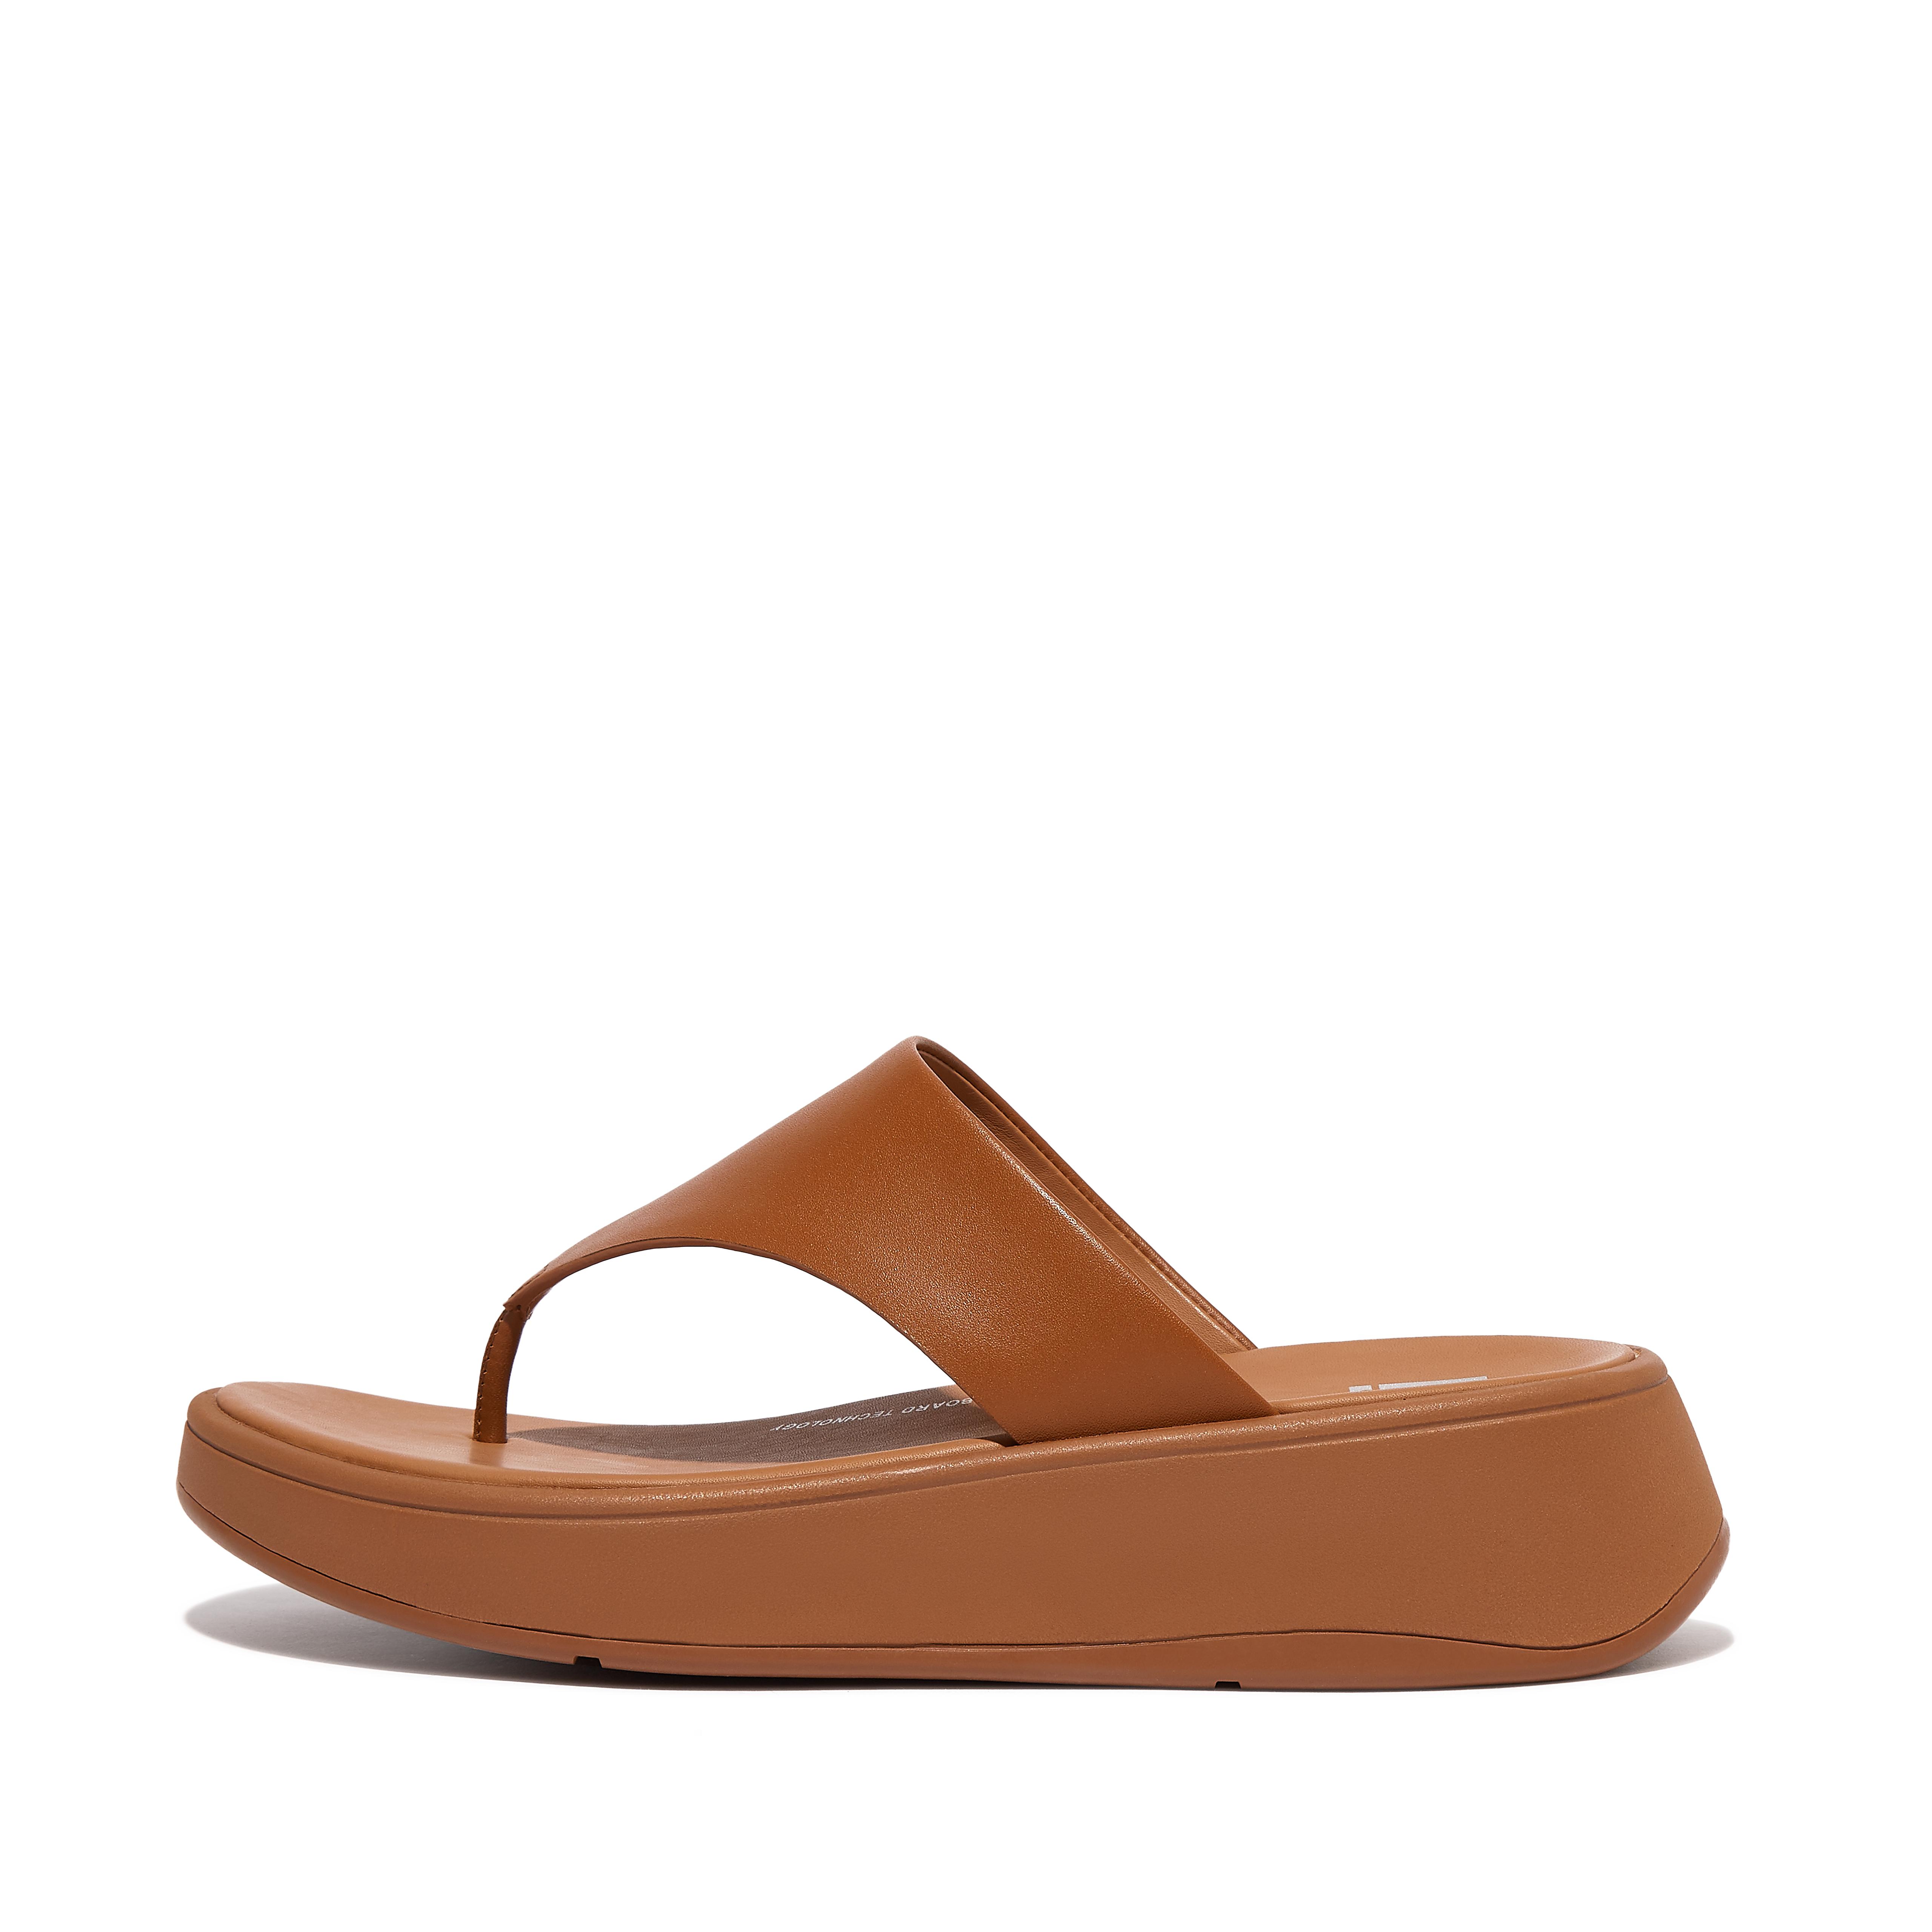 핏플랍 샌들 Fitflop Leather Flatform Toe-Post Sandals,Light Tan